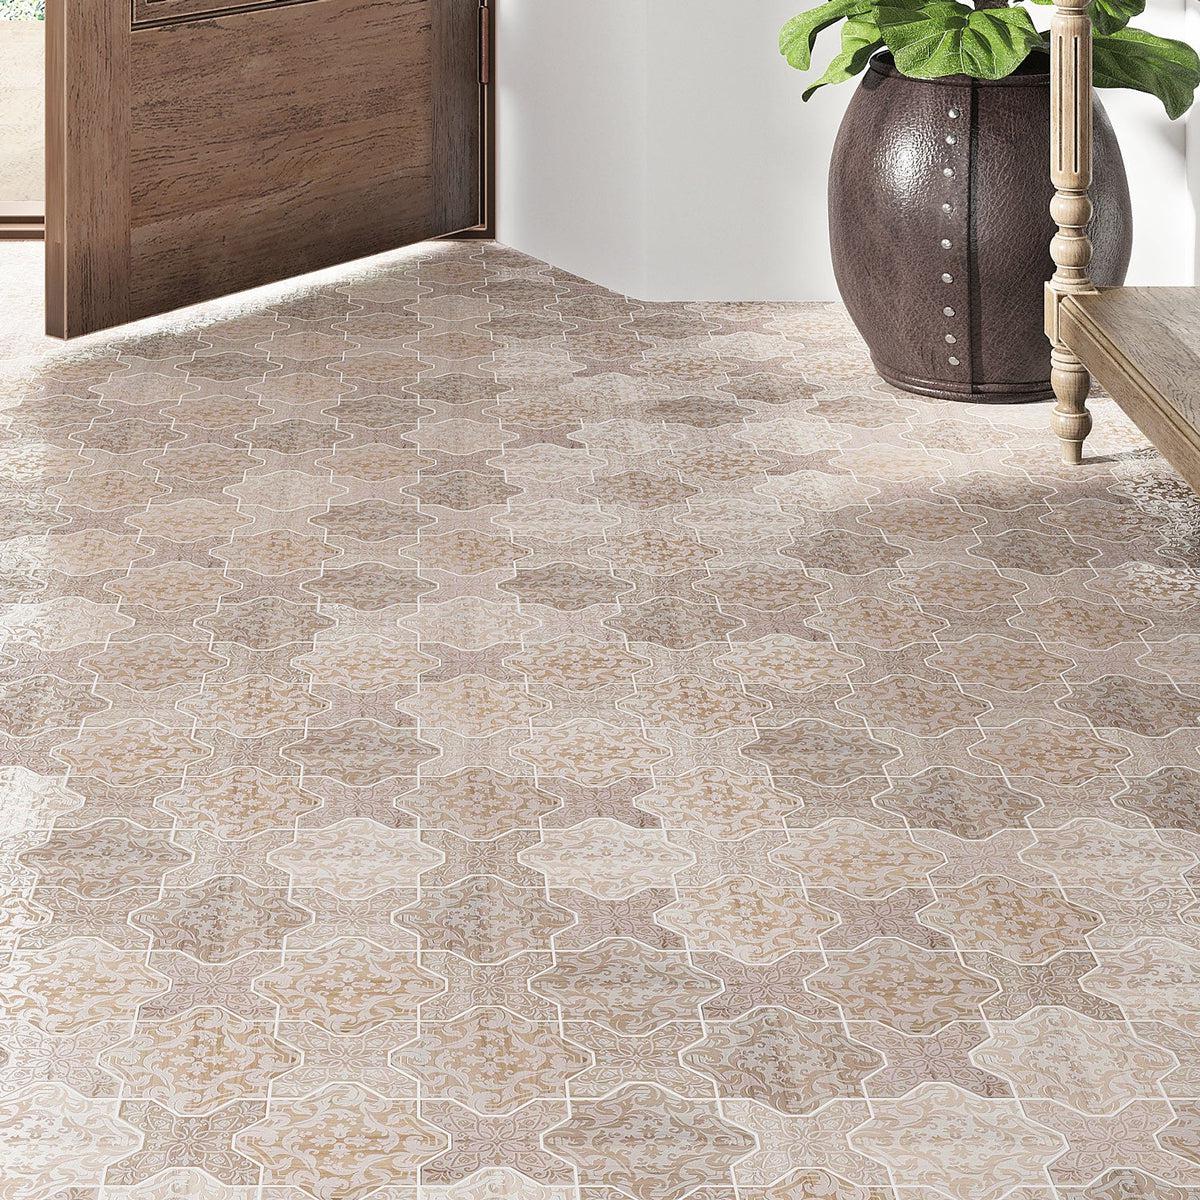 Entryway Moroccan tile flooring